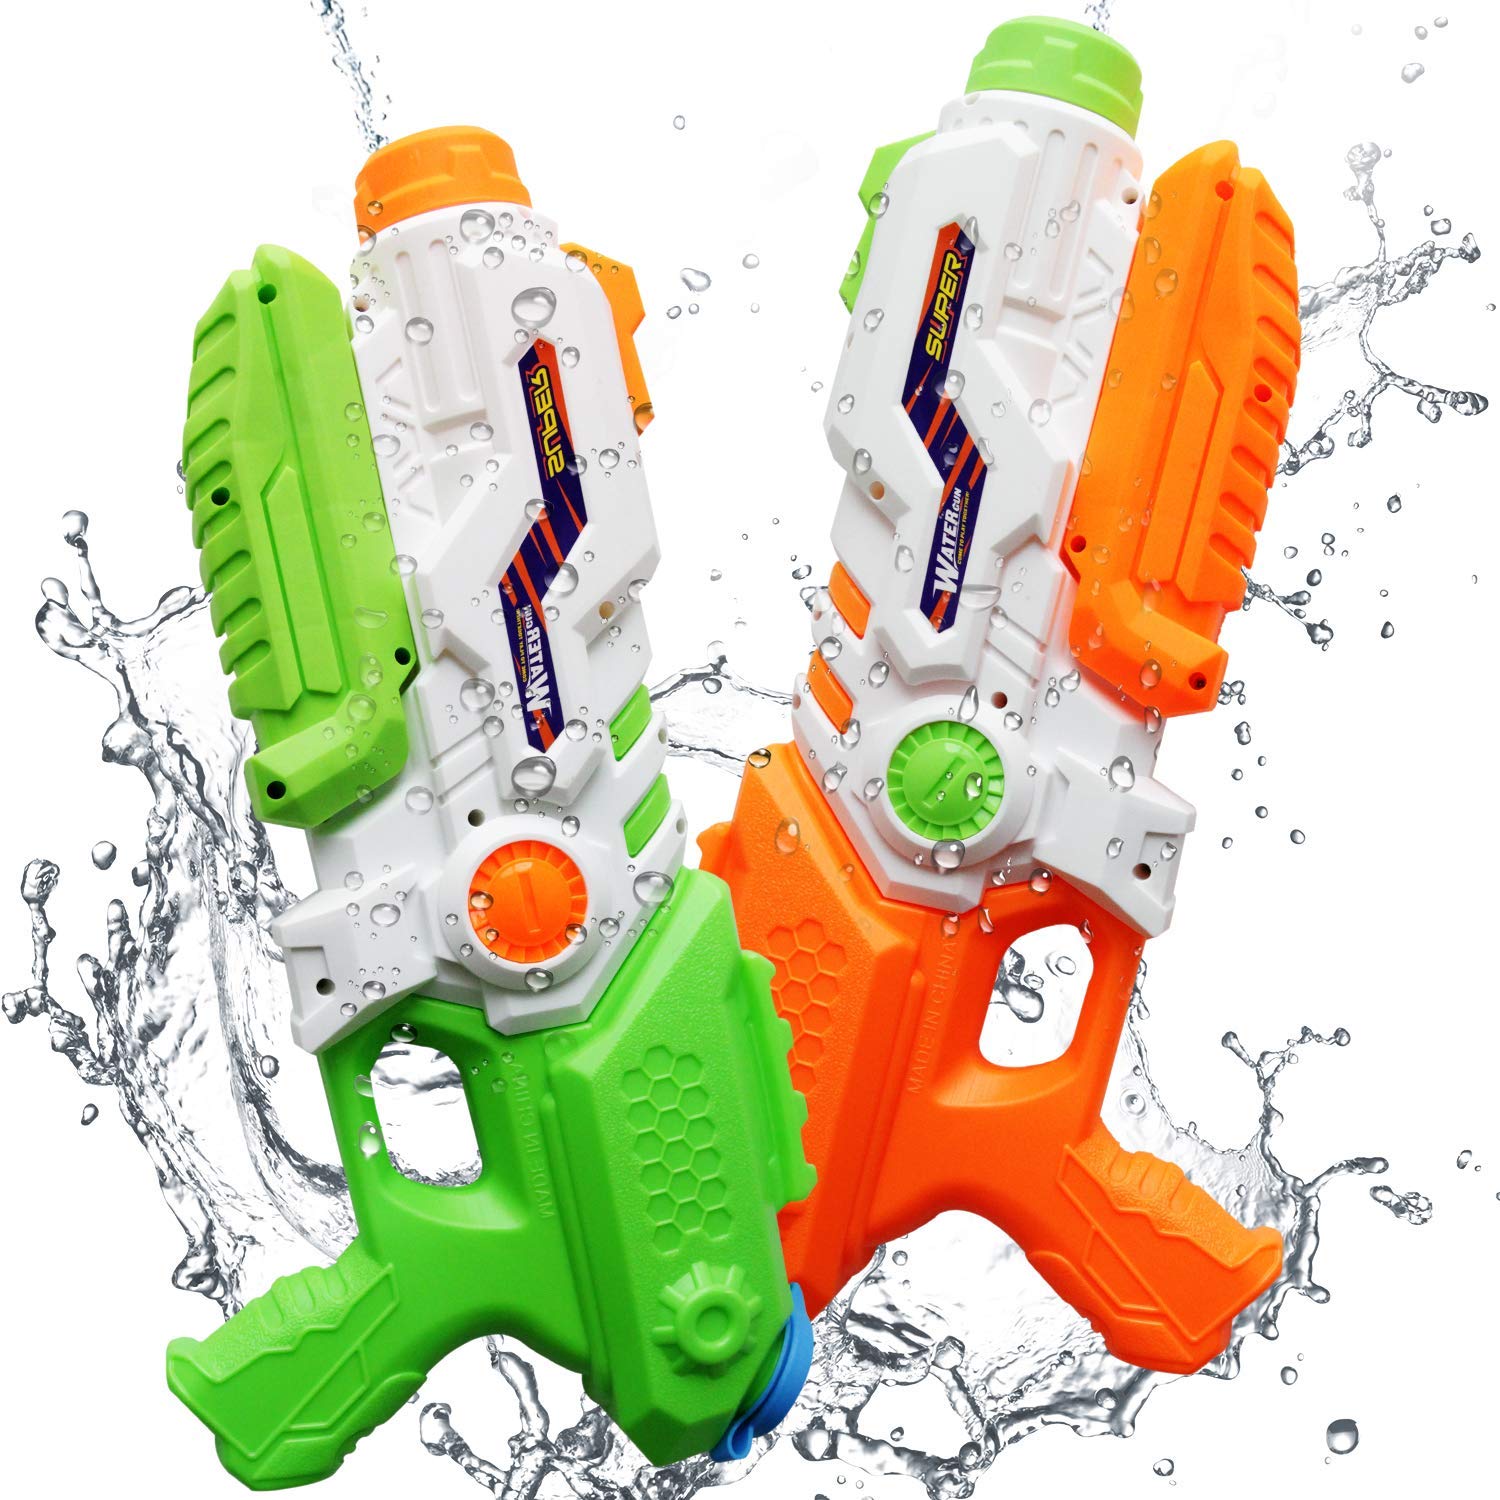 all water guns